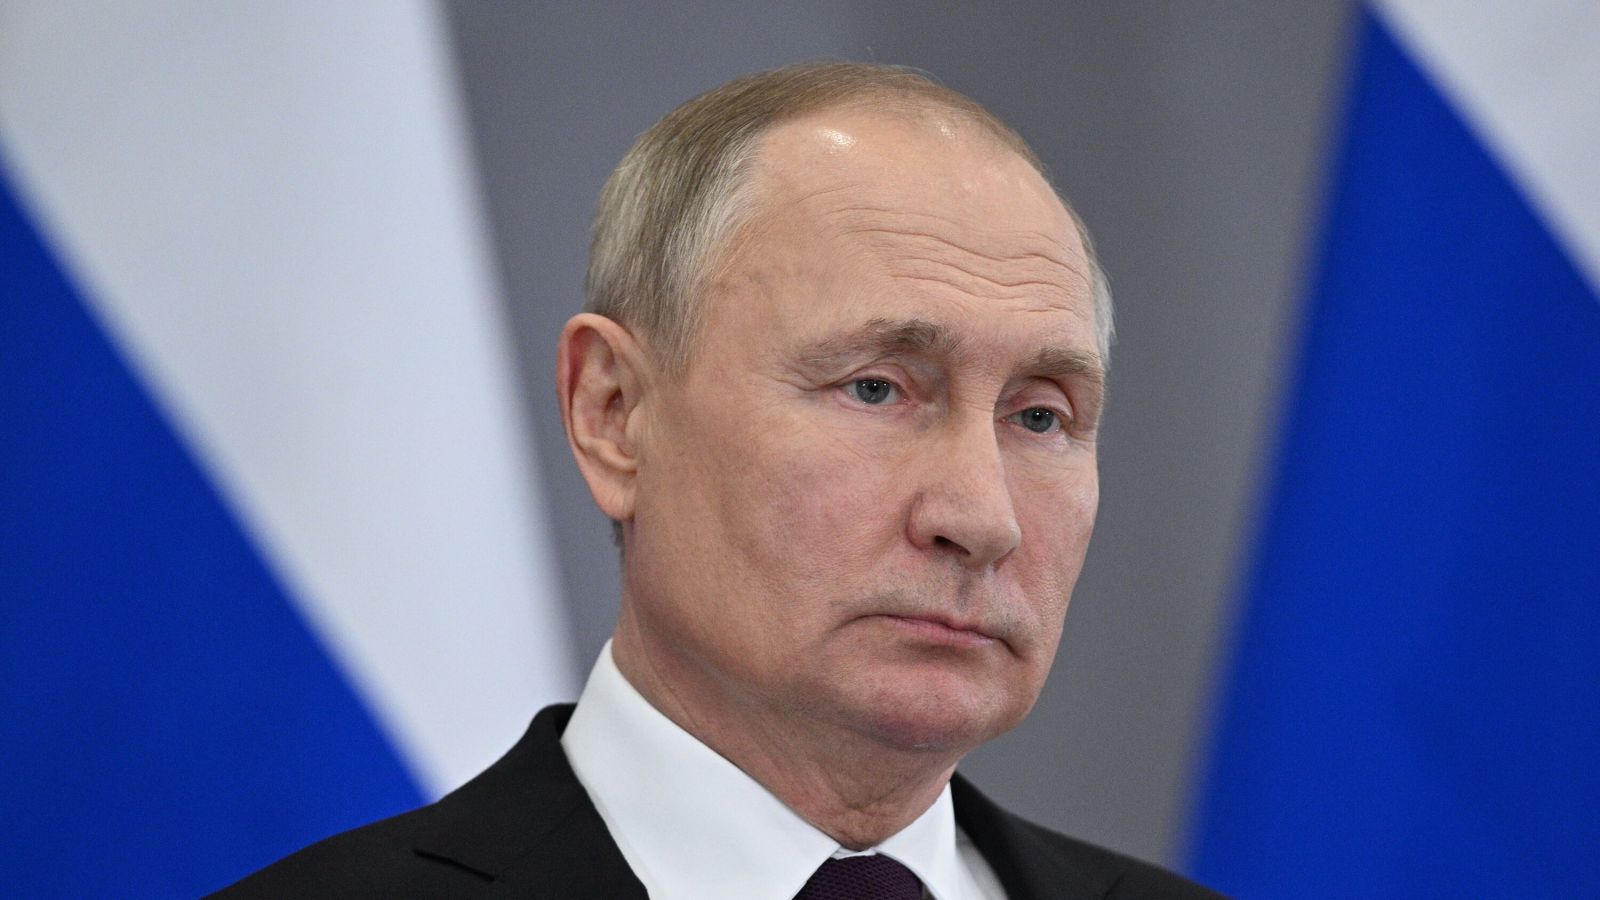 Rusiya öz maraqlarından çıxış etməlidir - Putin